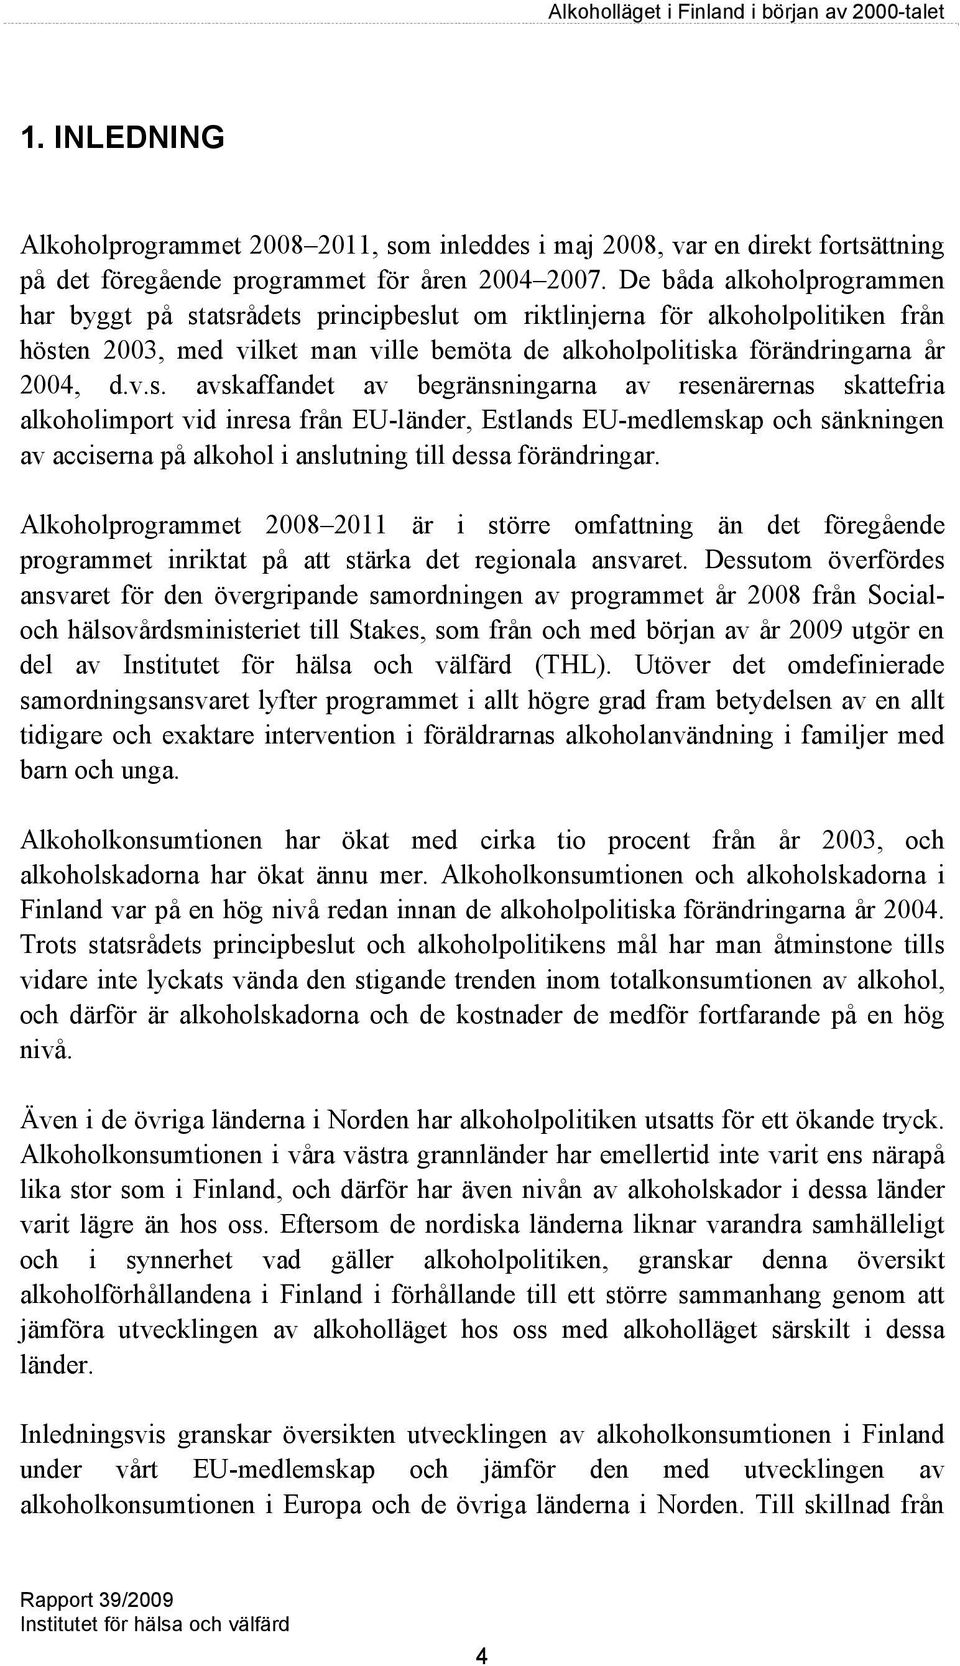 atsrådets principbeslut om riktlinjerna för alkoholpolitiken från hösten 2003, med vilket man ville bemöta de alkoholpolitiska förändringarna år 2004, d.v.s. avskaffandet av begränsningarna av